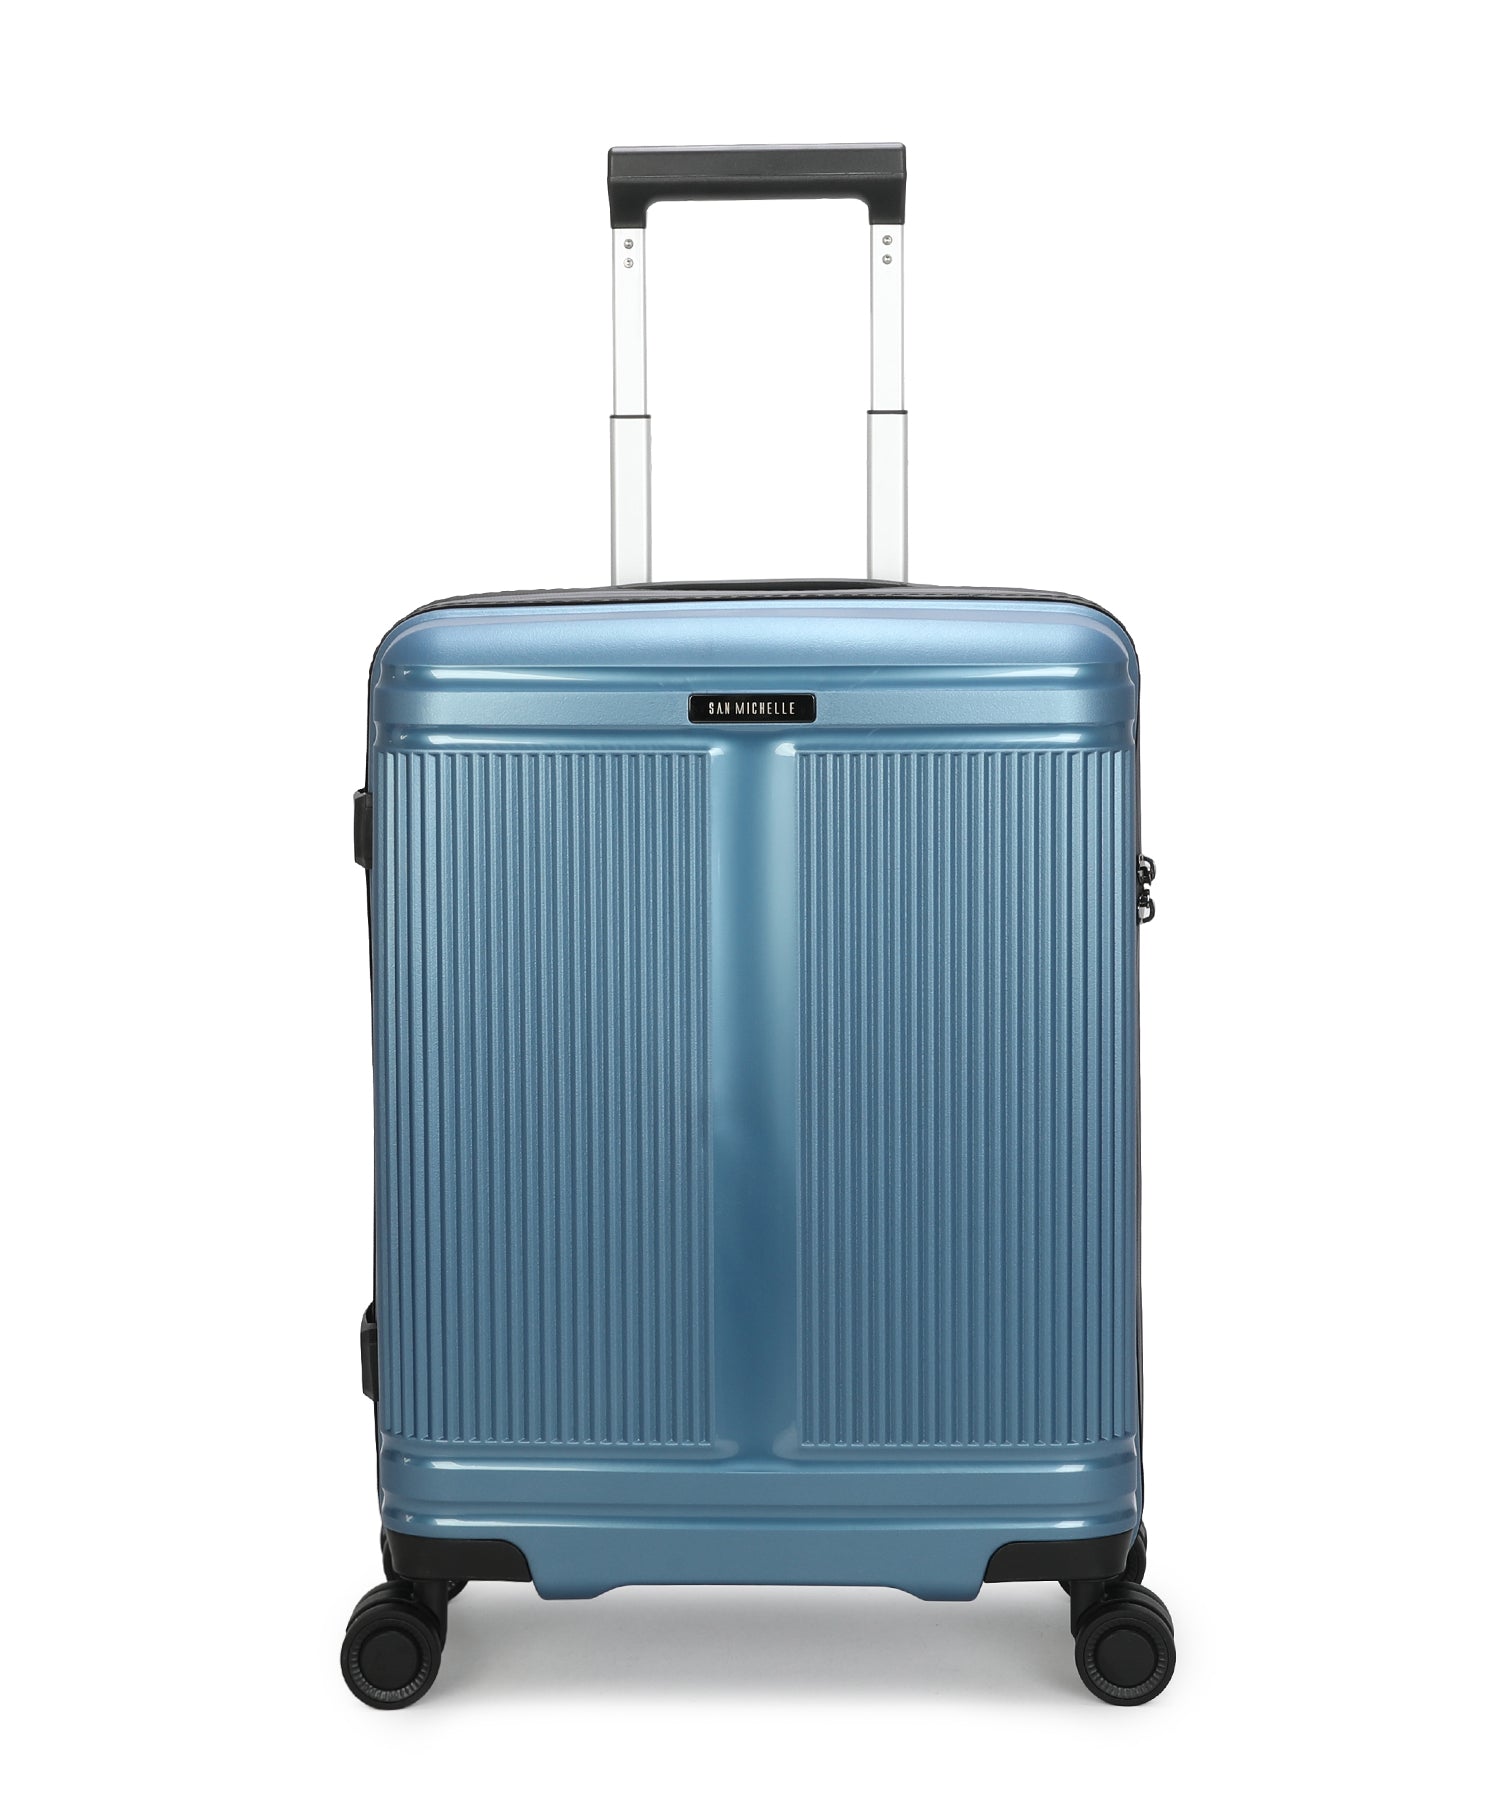 San Michelle Nova Pro 55cm Suitcase